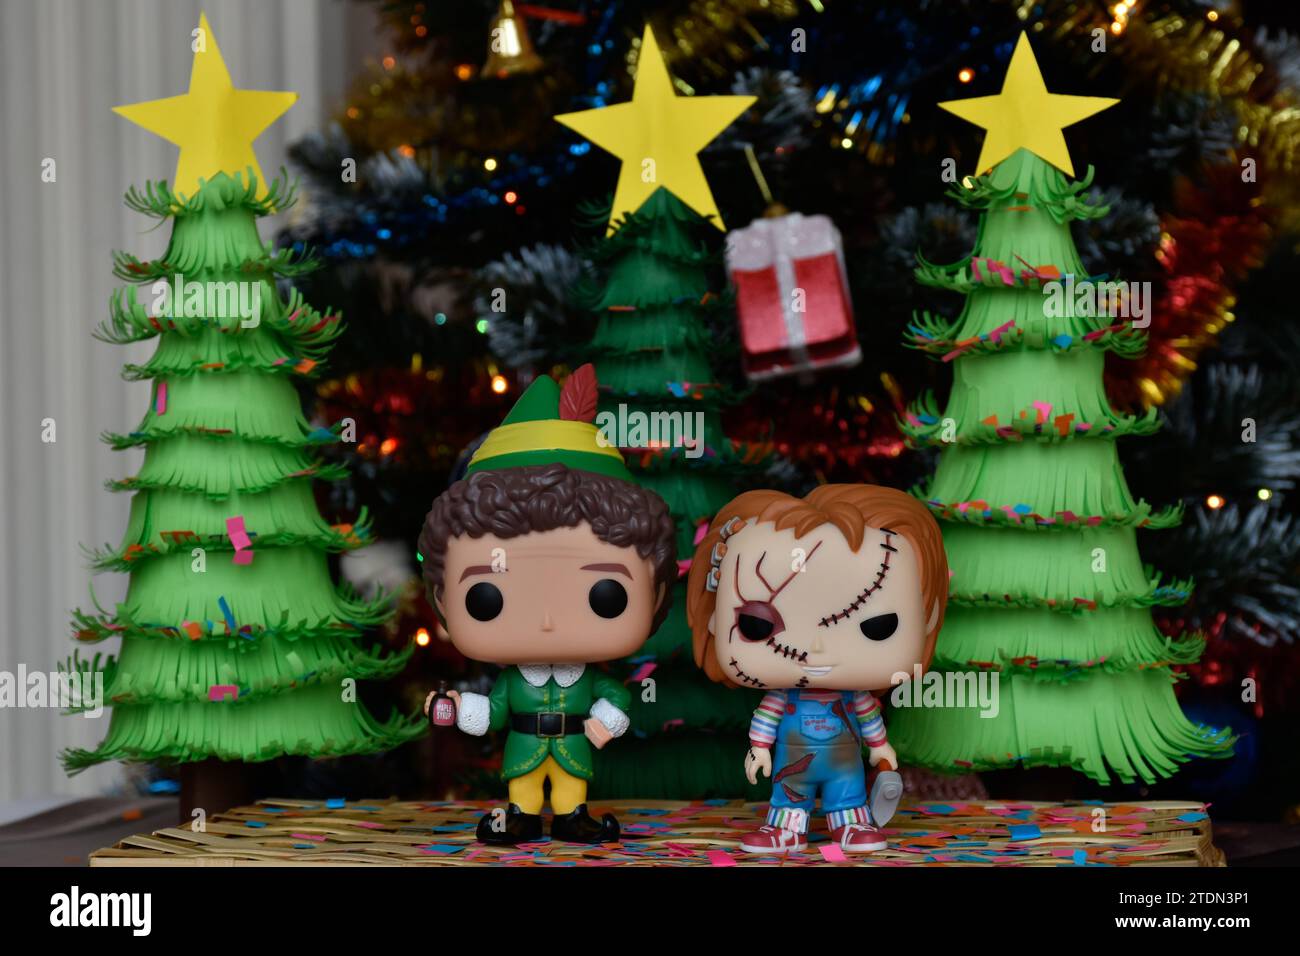 Figurines Funko Pop de Buddy l'elfe et Chucky tueur poupée. Arbres de Noël en papier faits à la main, ornements, confettis, guirlande, décor festif. Banque D'Images